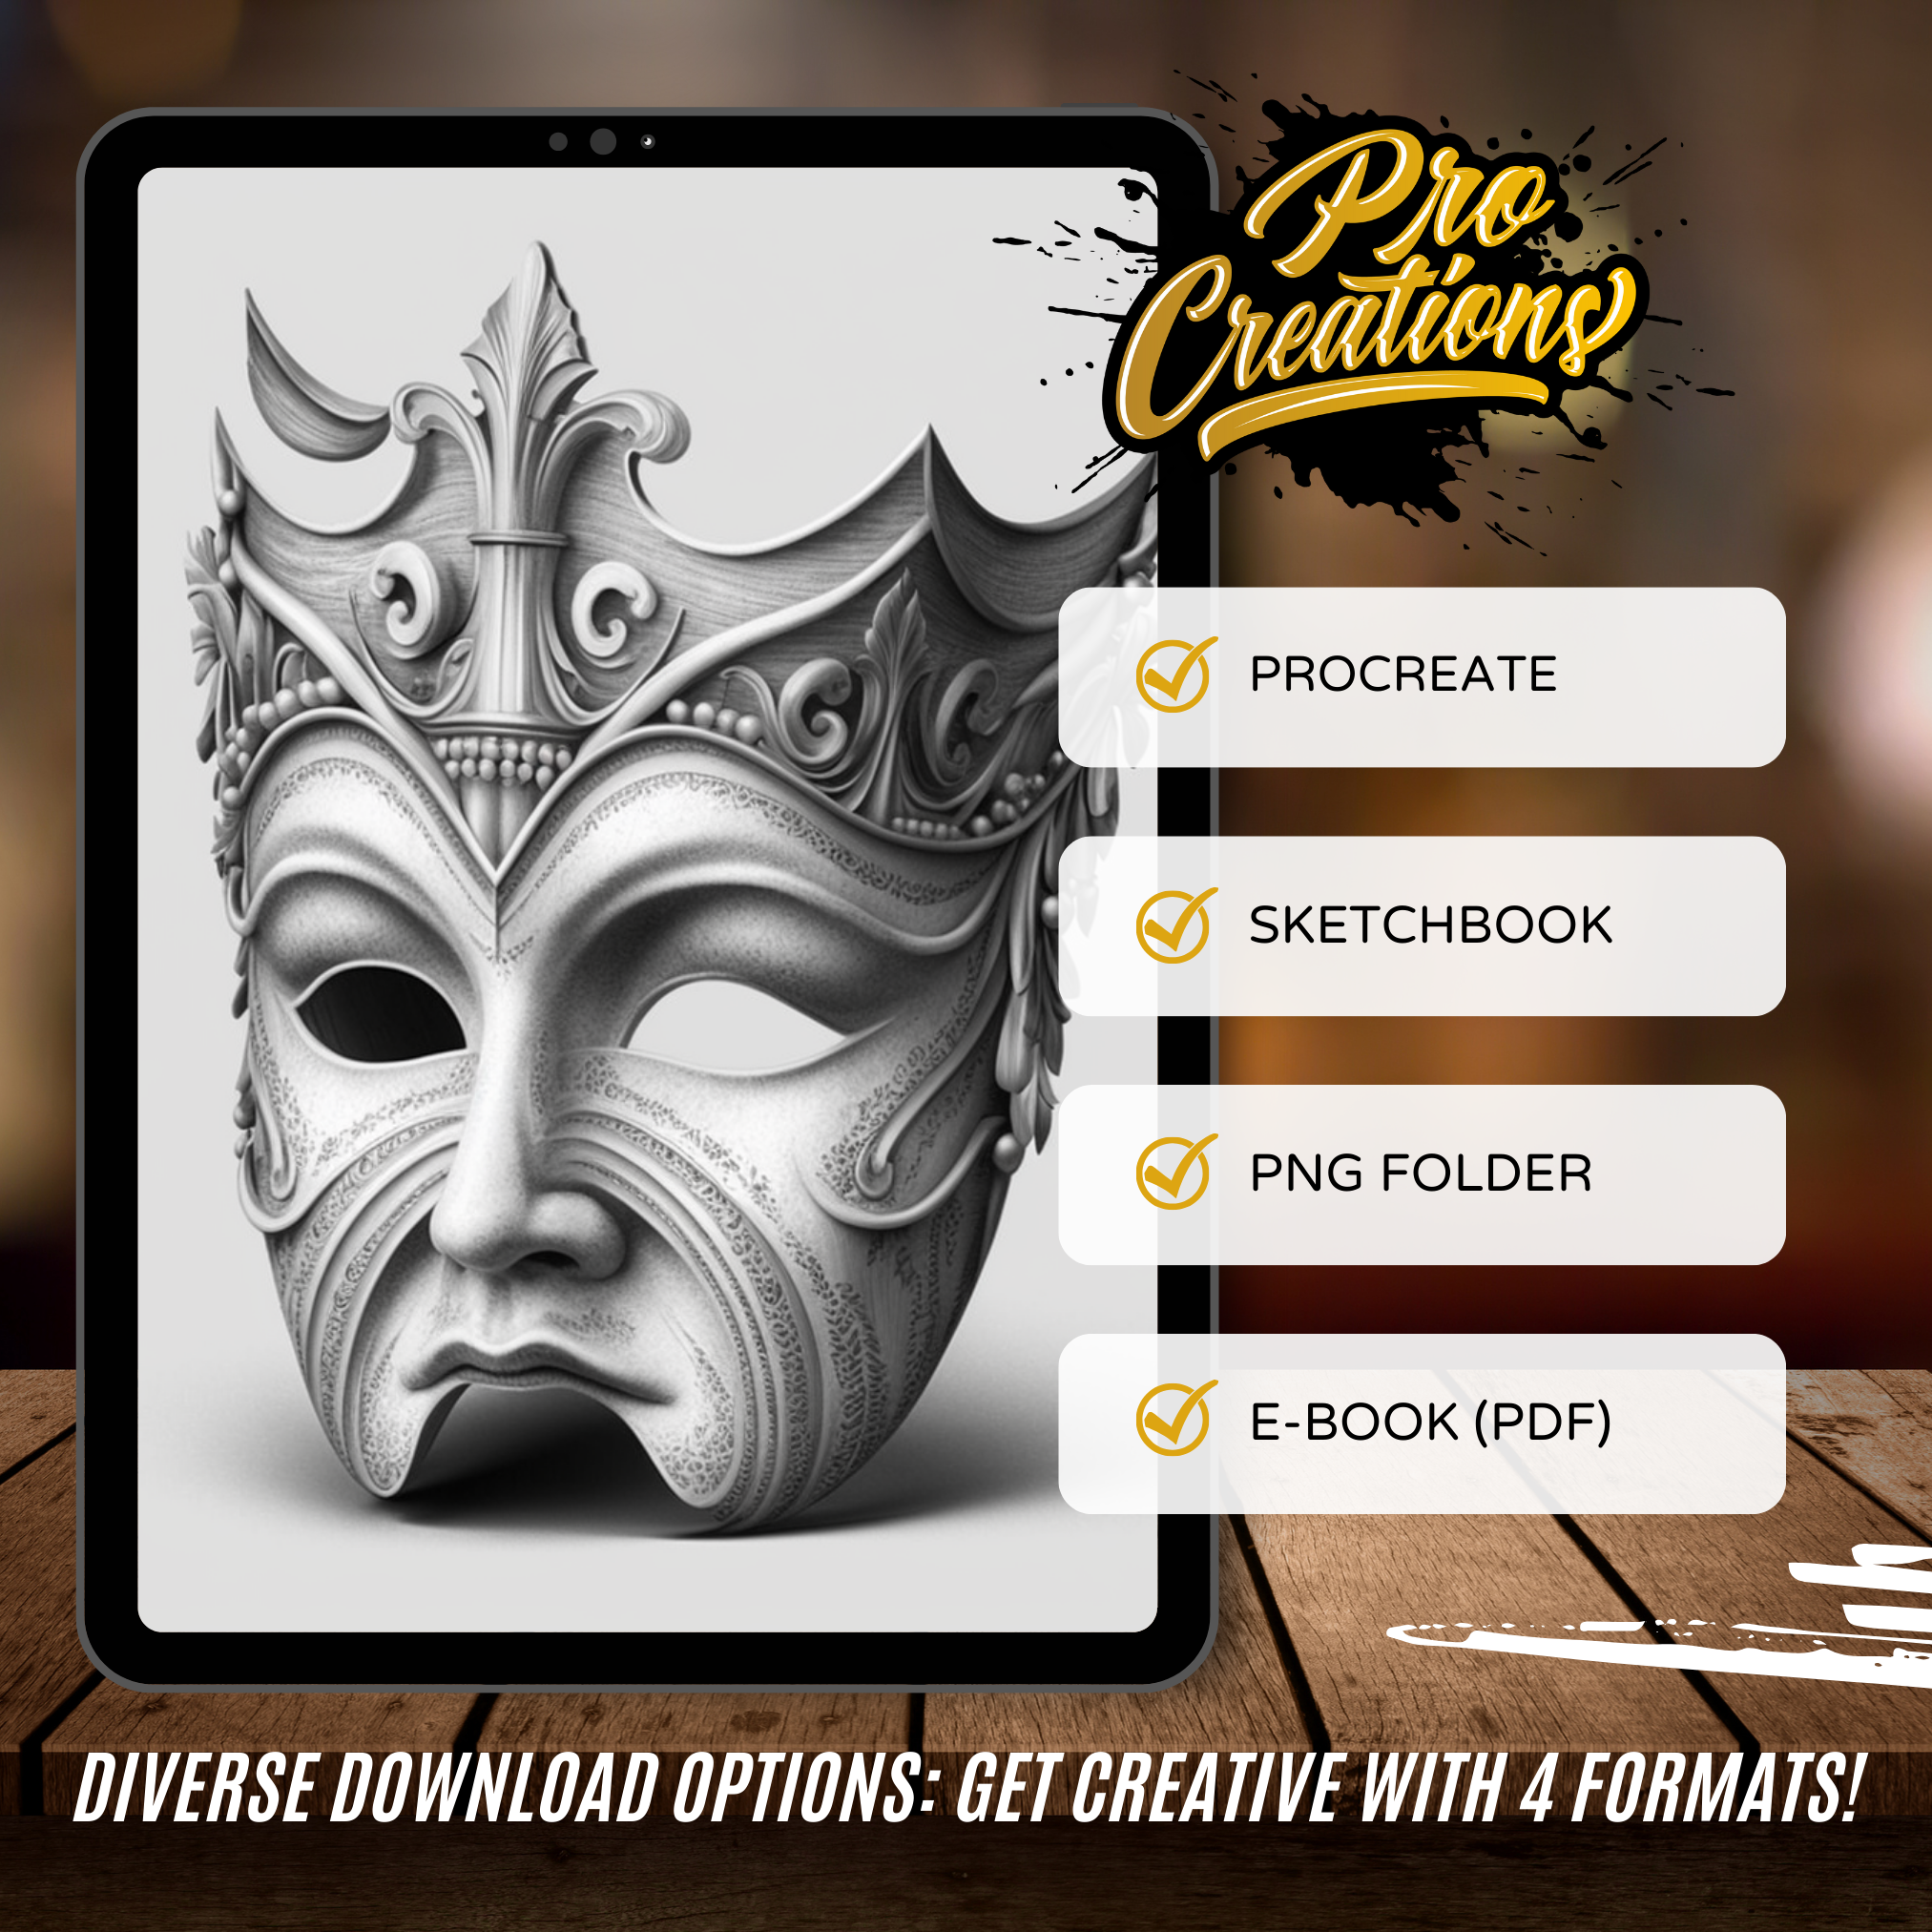 Carnival Masks Digital Reference Design Collection: 50 Procreate & Sketchbook Images